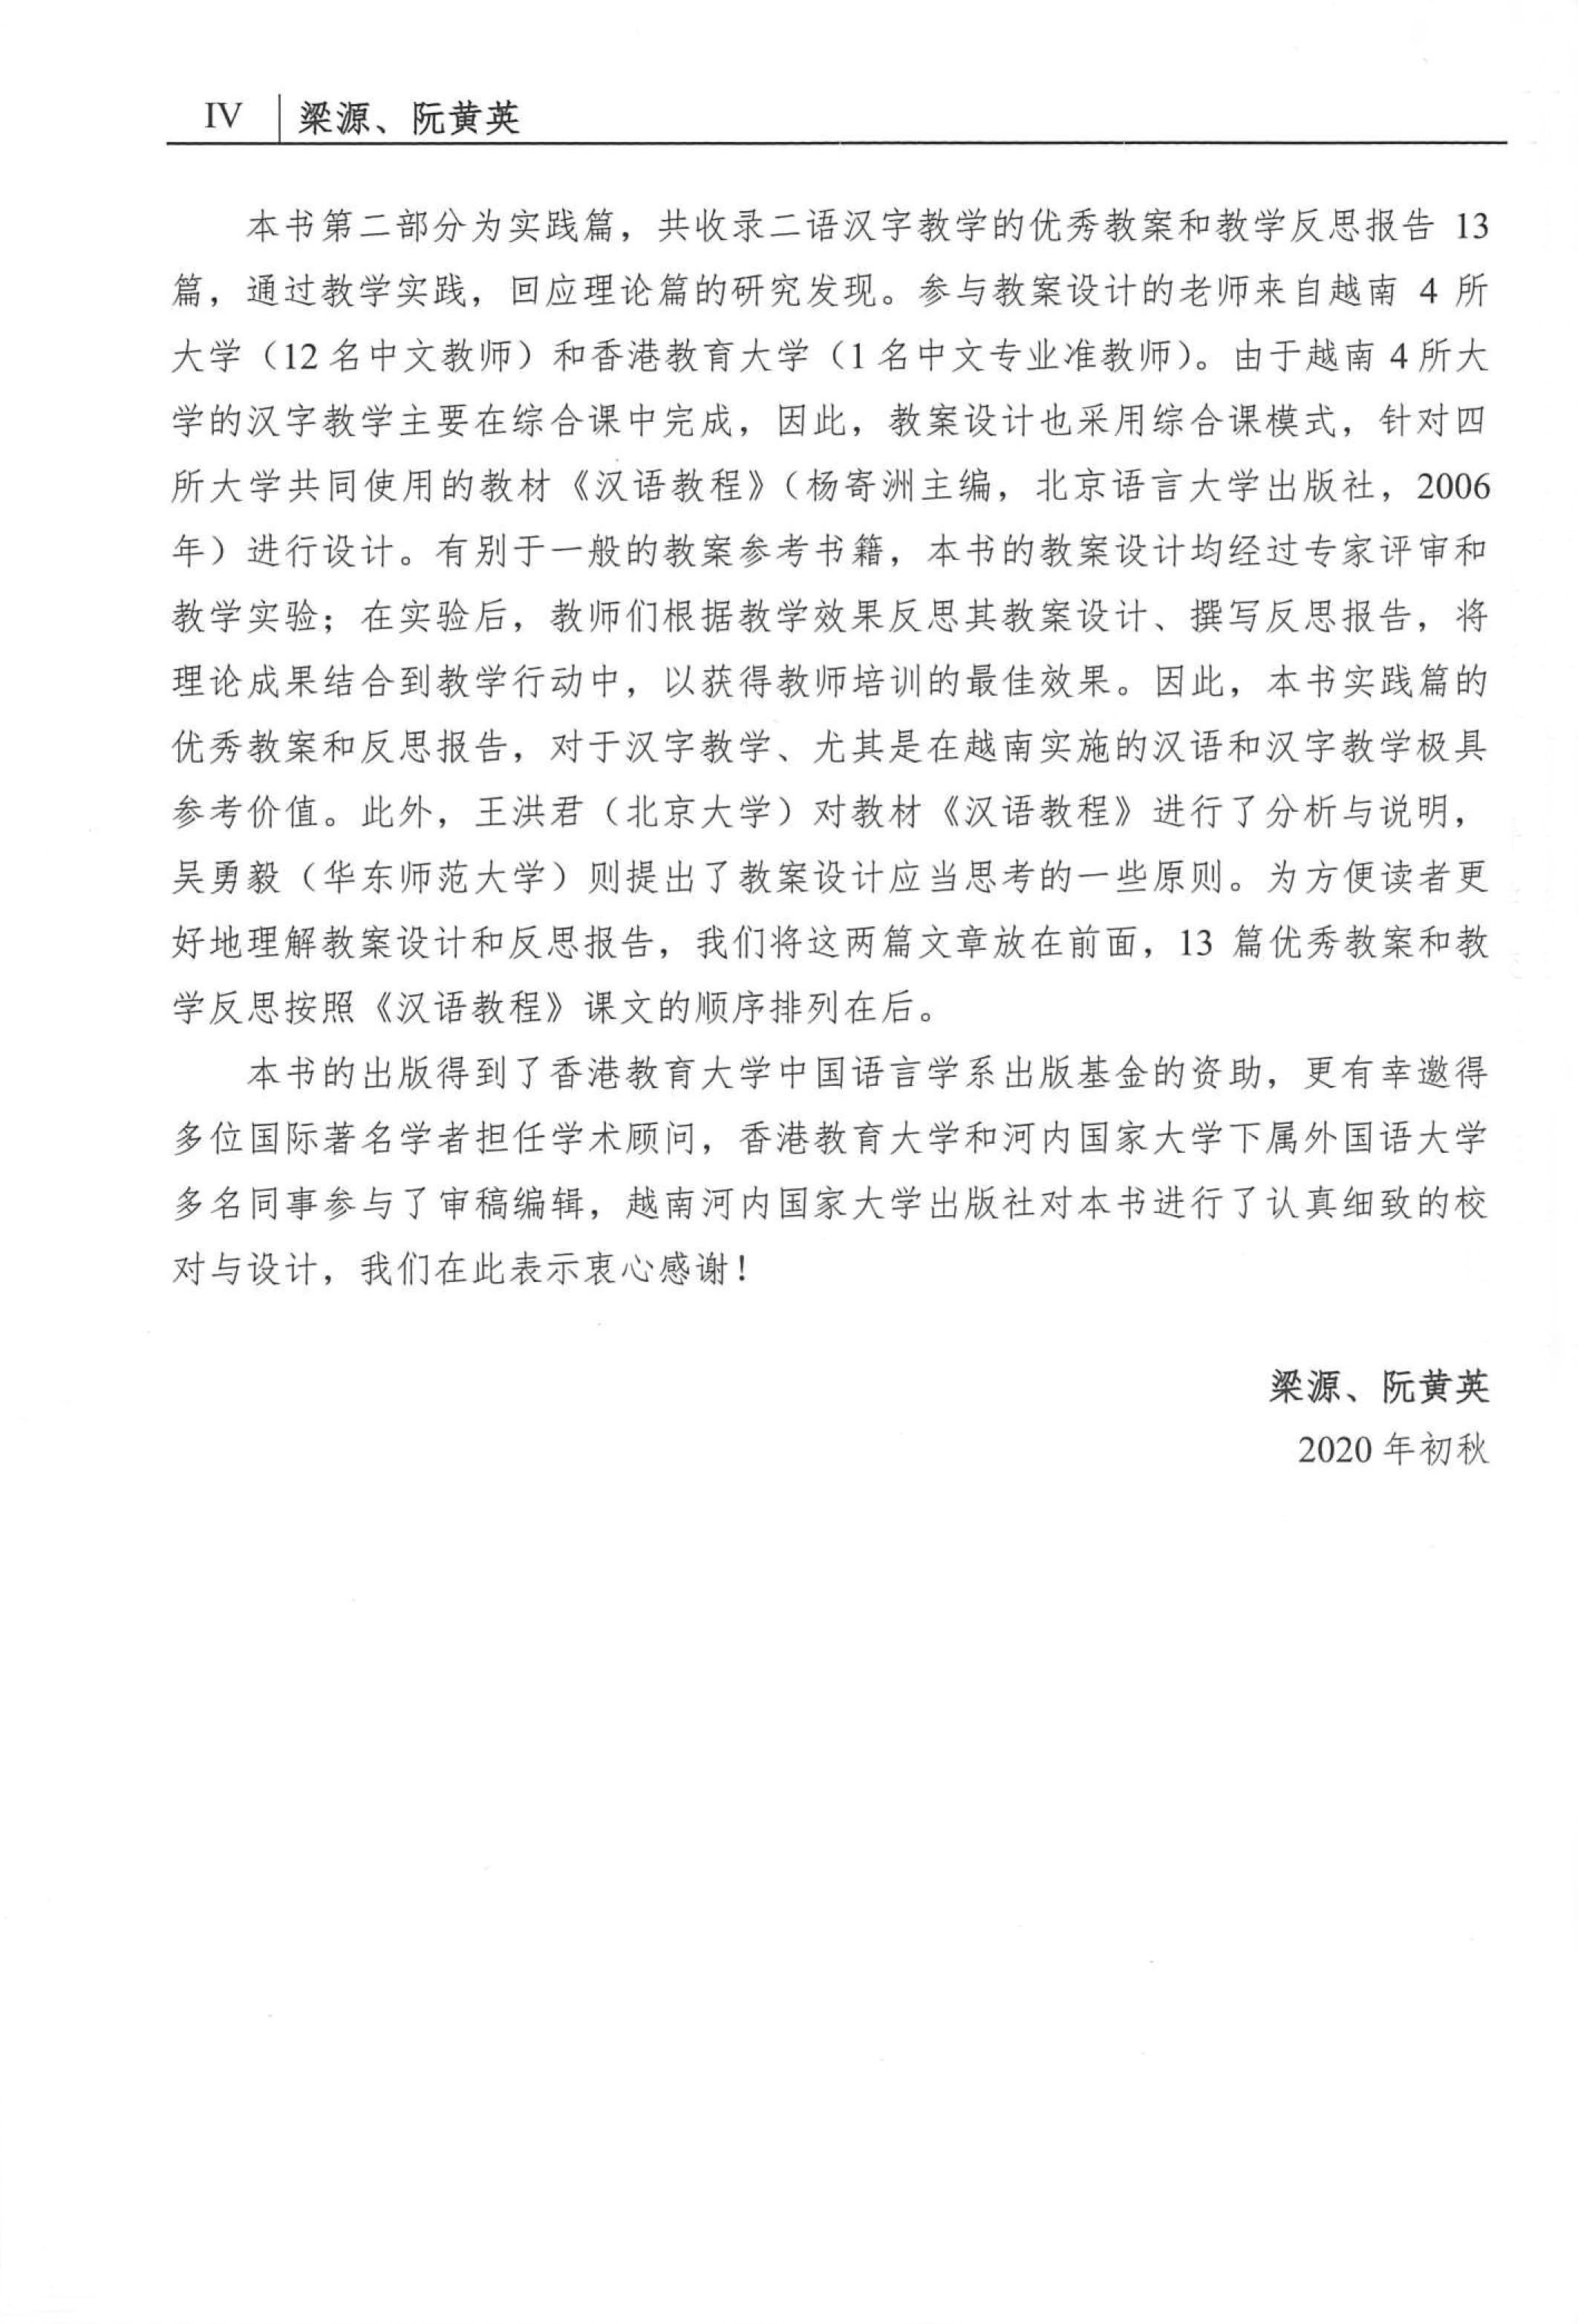 第二語言的漢字教與學 中國語言學系